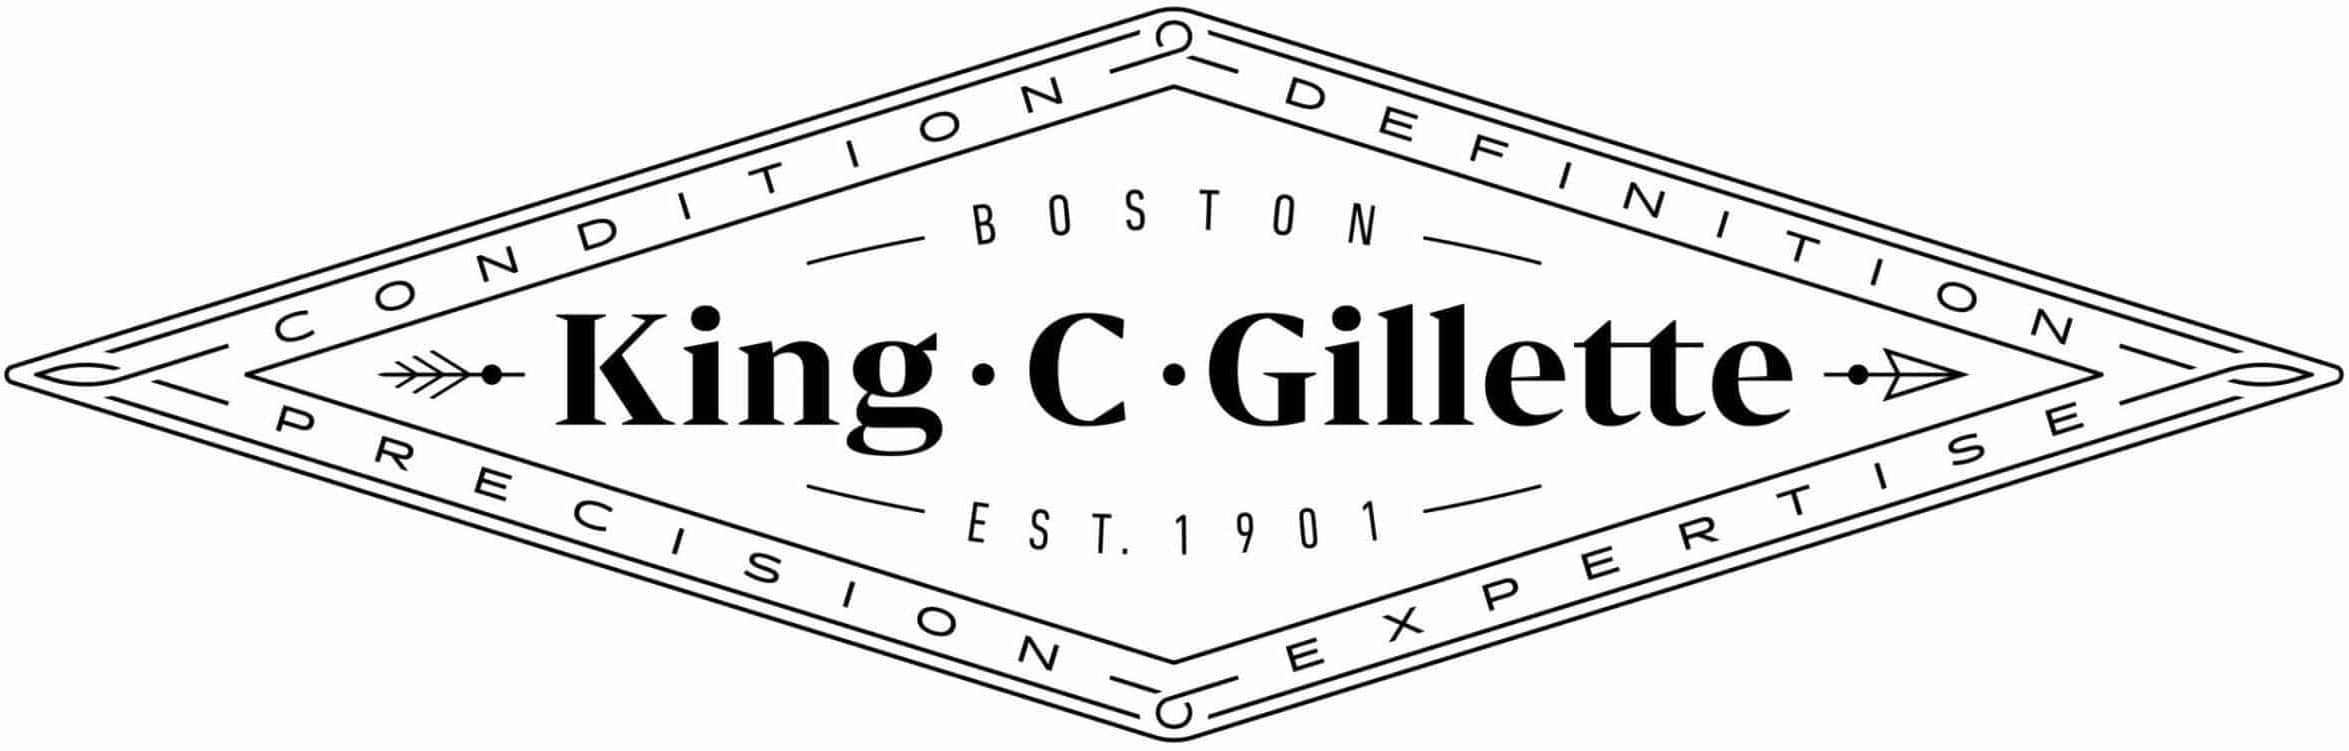 logo king c gillette